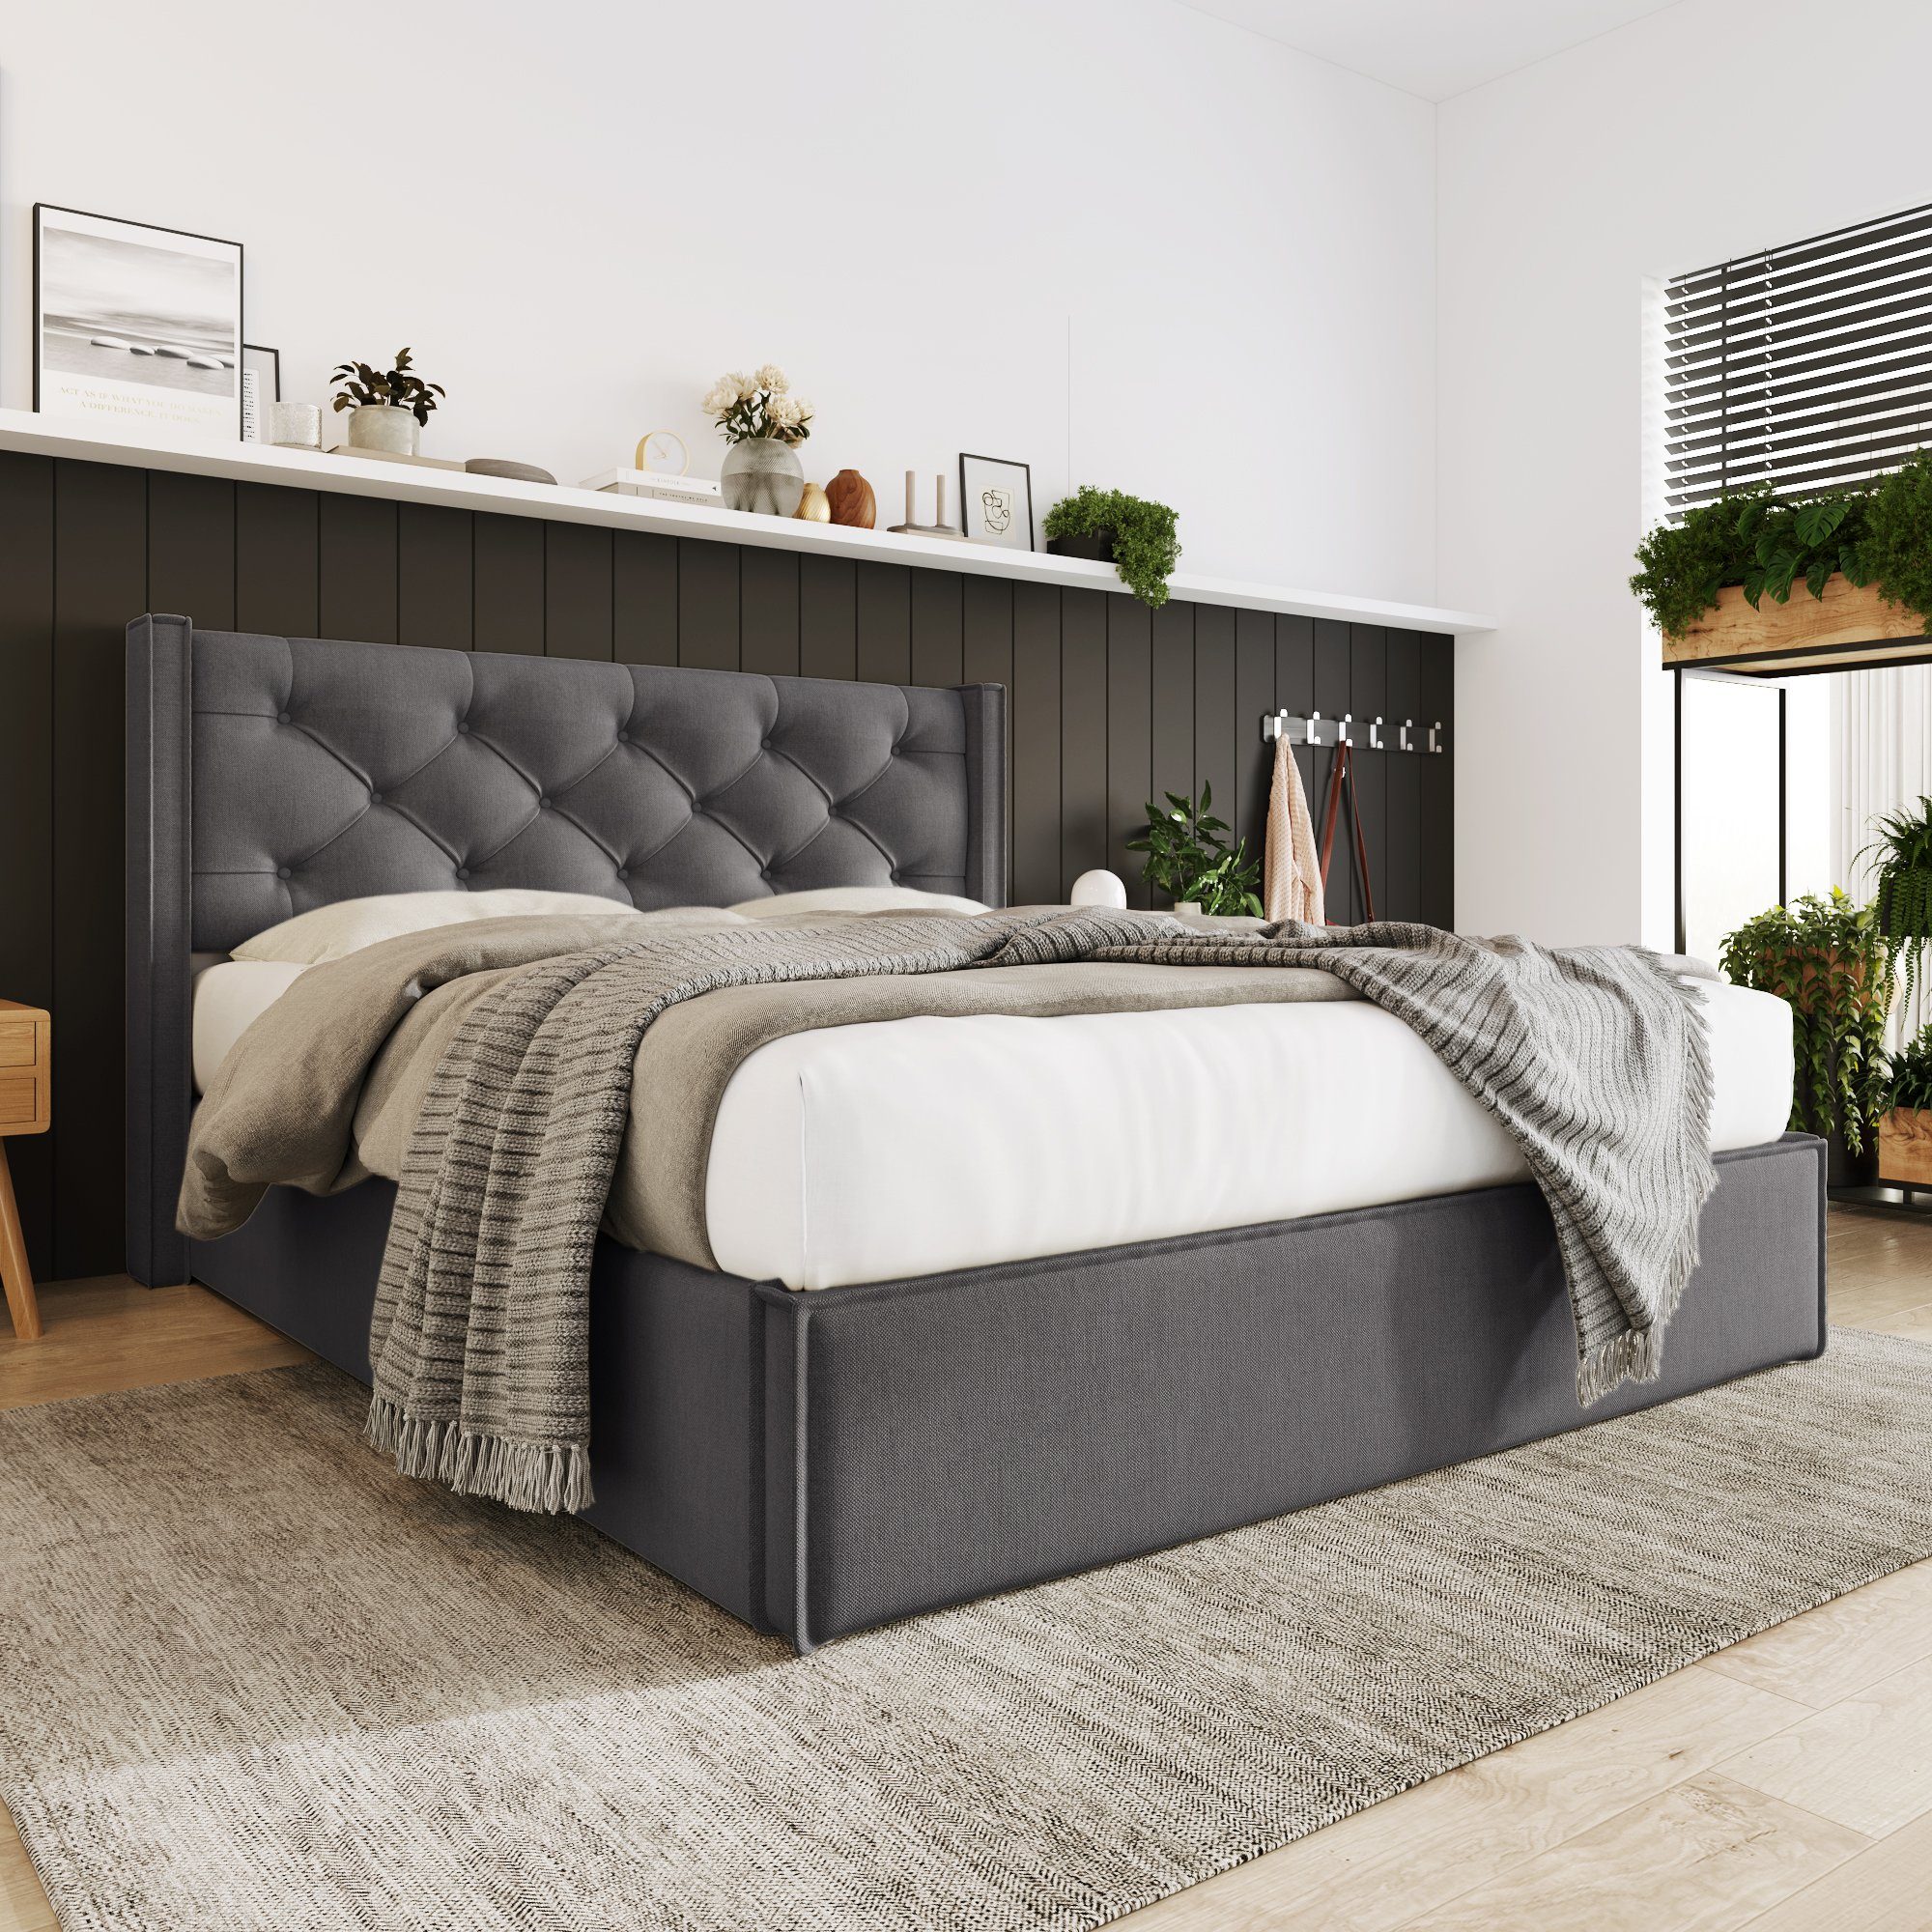 Polsterbett mit Lattenrost Grau OKWISH 140x200cm,Bett aus Baumwolle Metallrahmen, Hydraulisches,